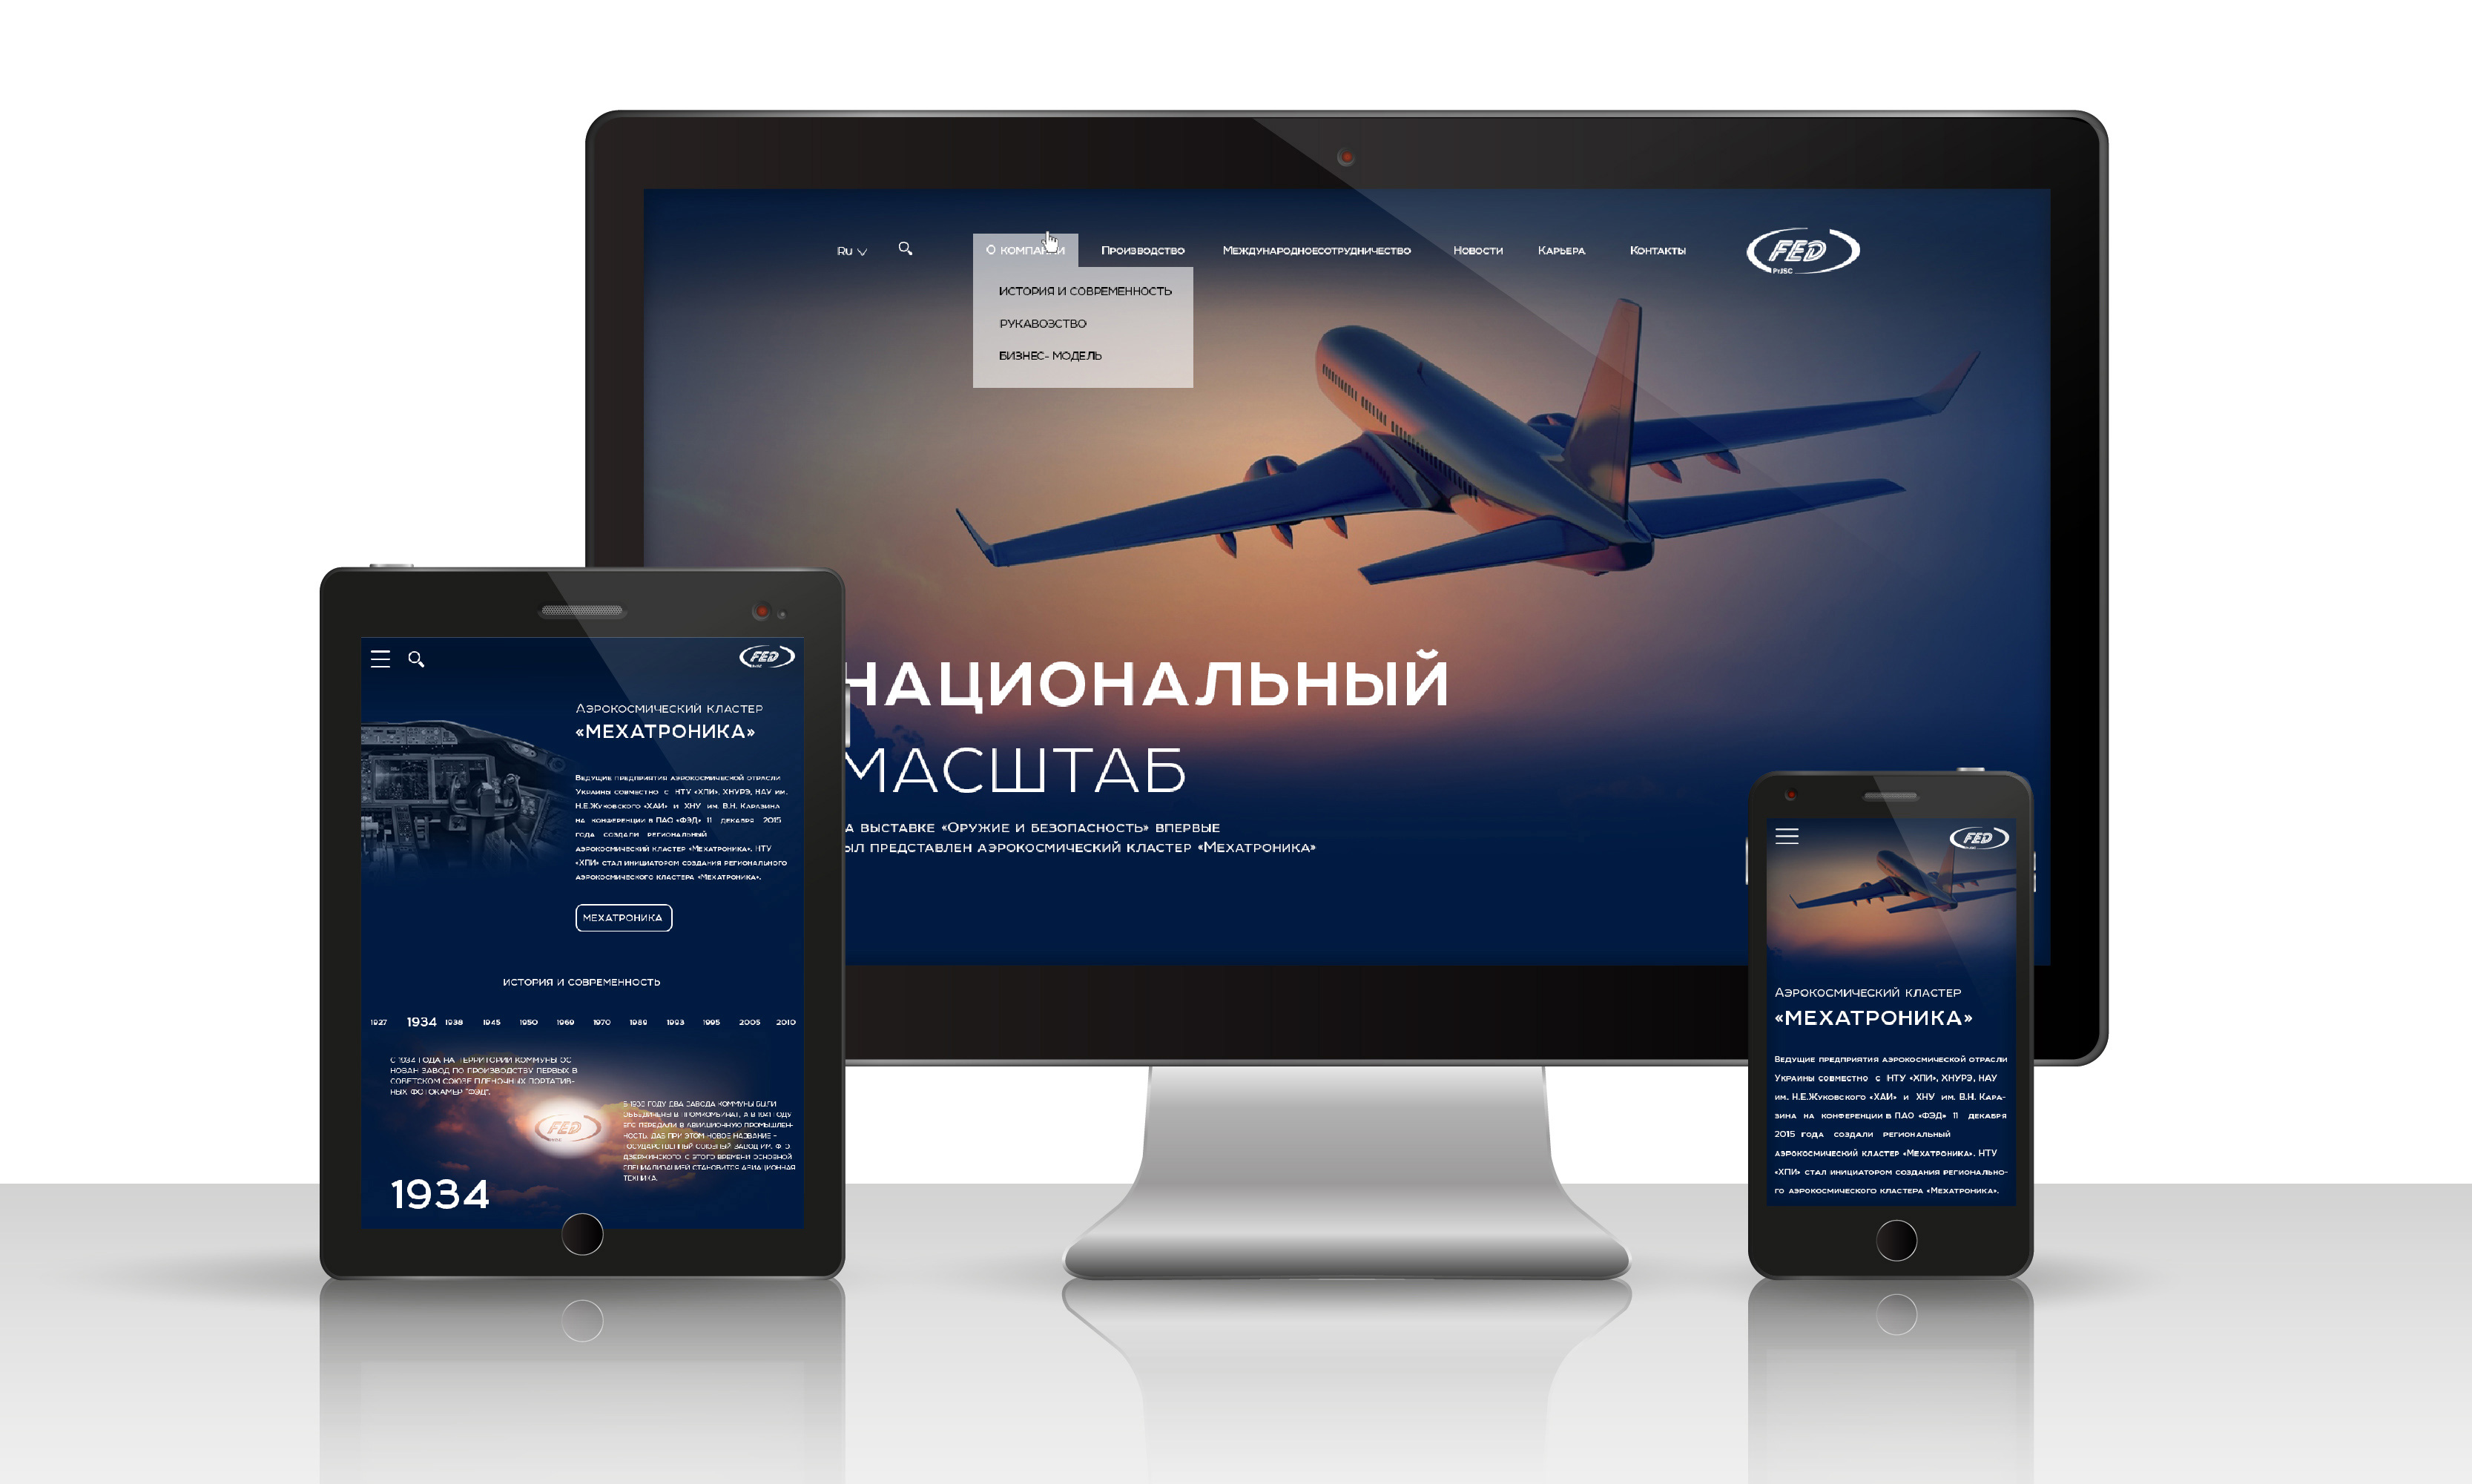 Актуальность темы проекта создание сайта создание сайта петербург спб